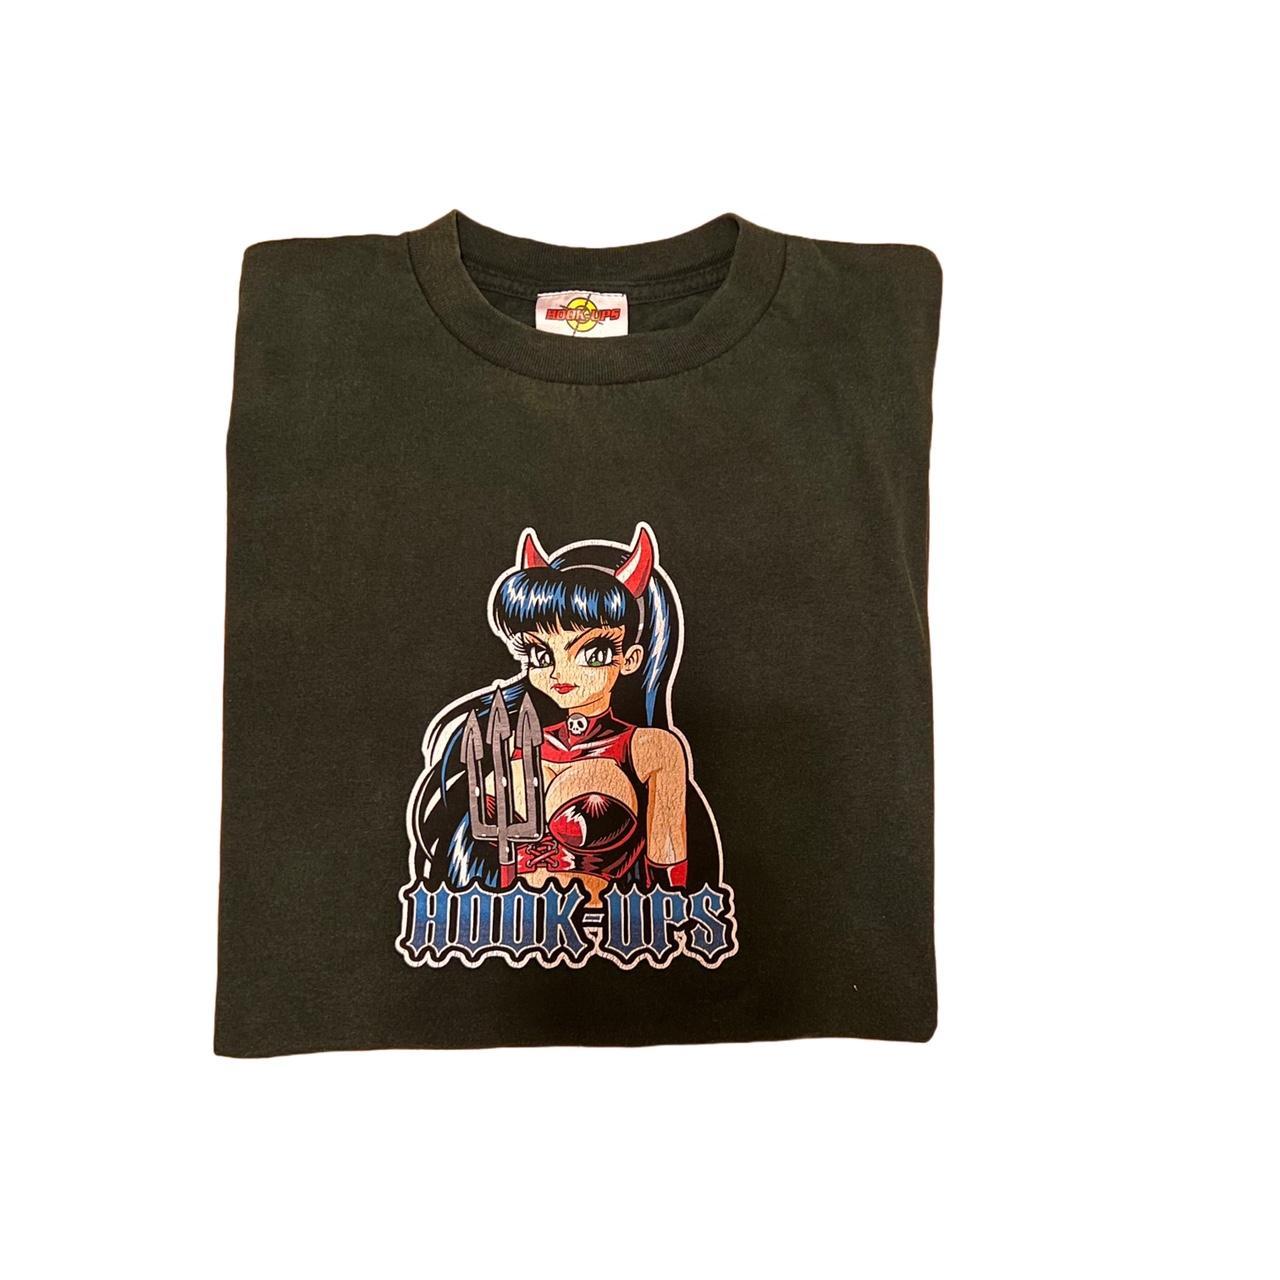 Hook-ups Devil Girl vintage shirt 22” x - Depop